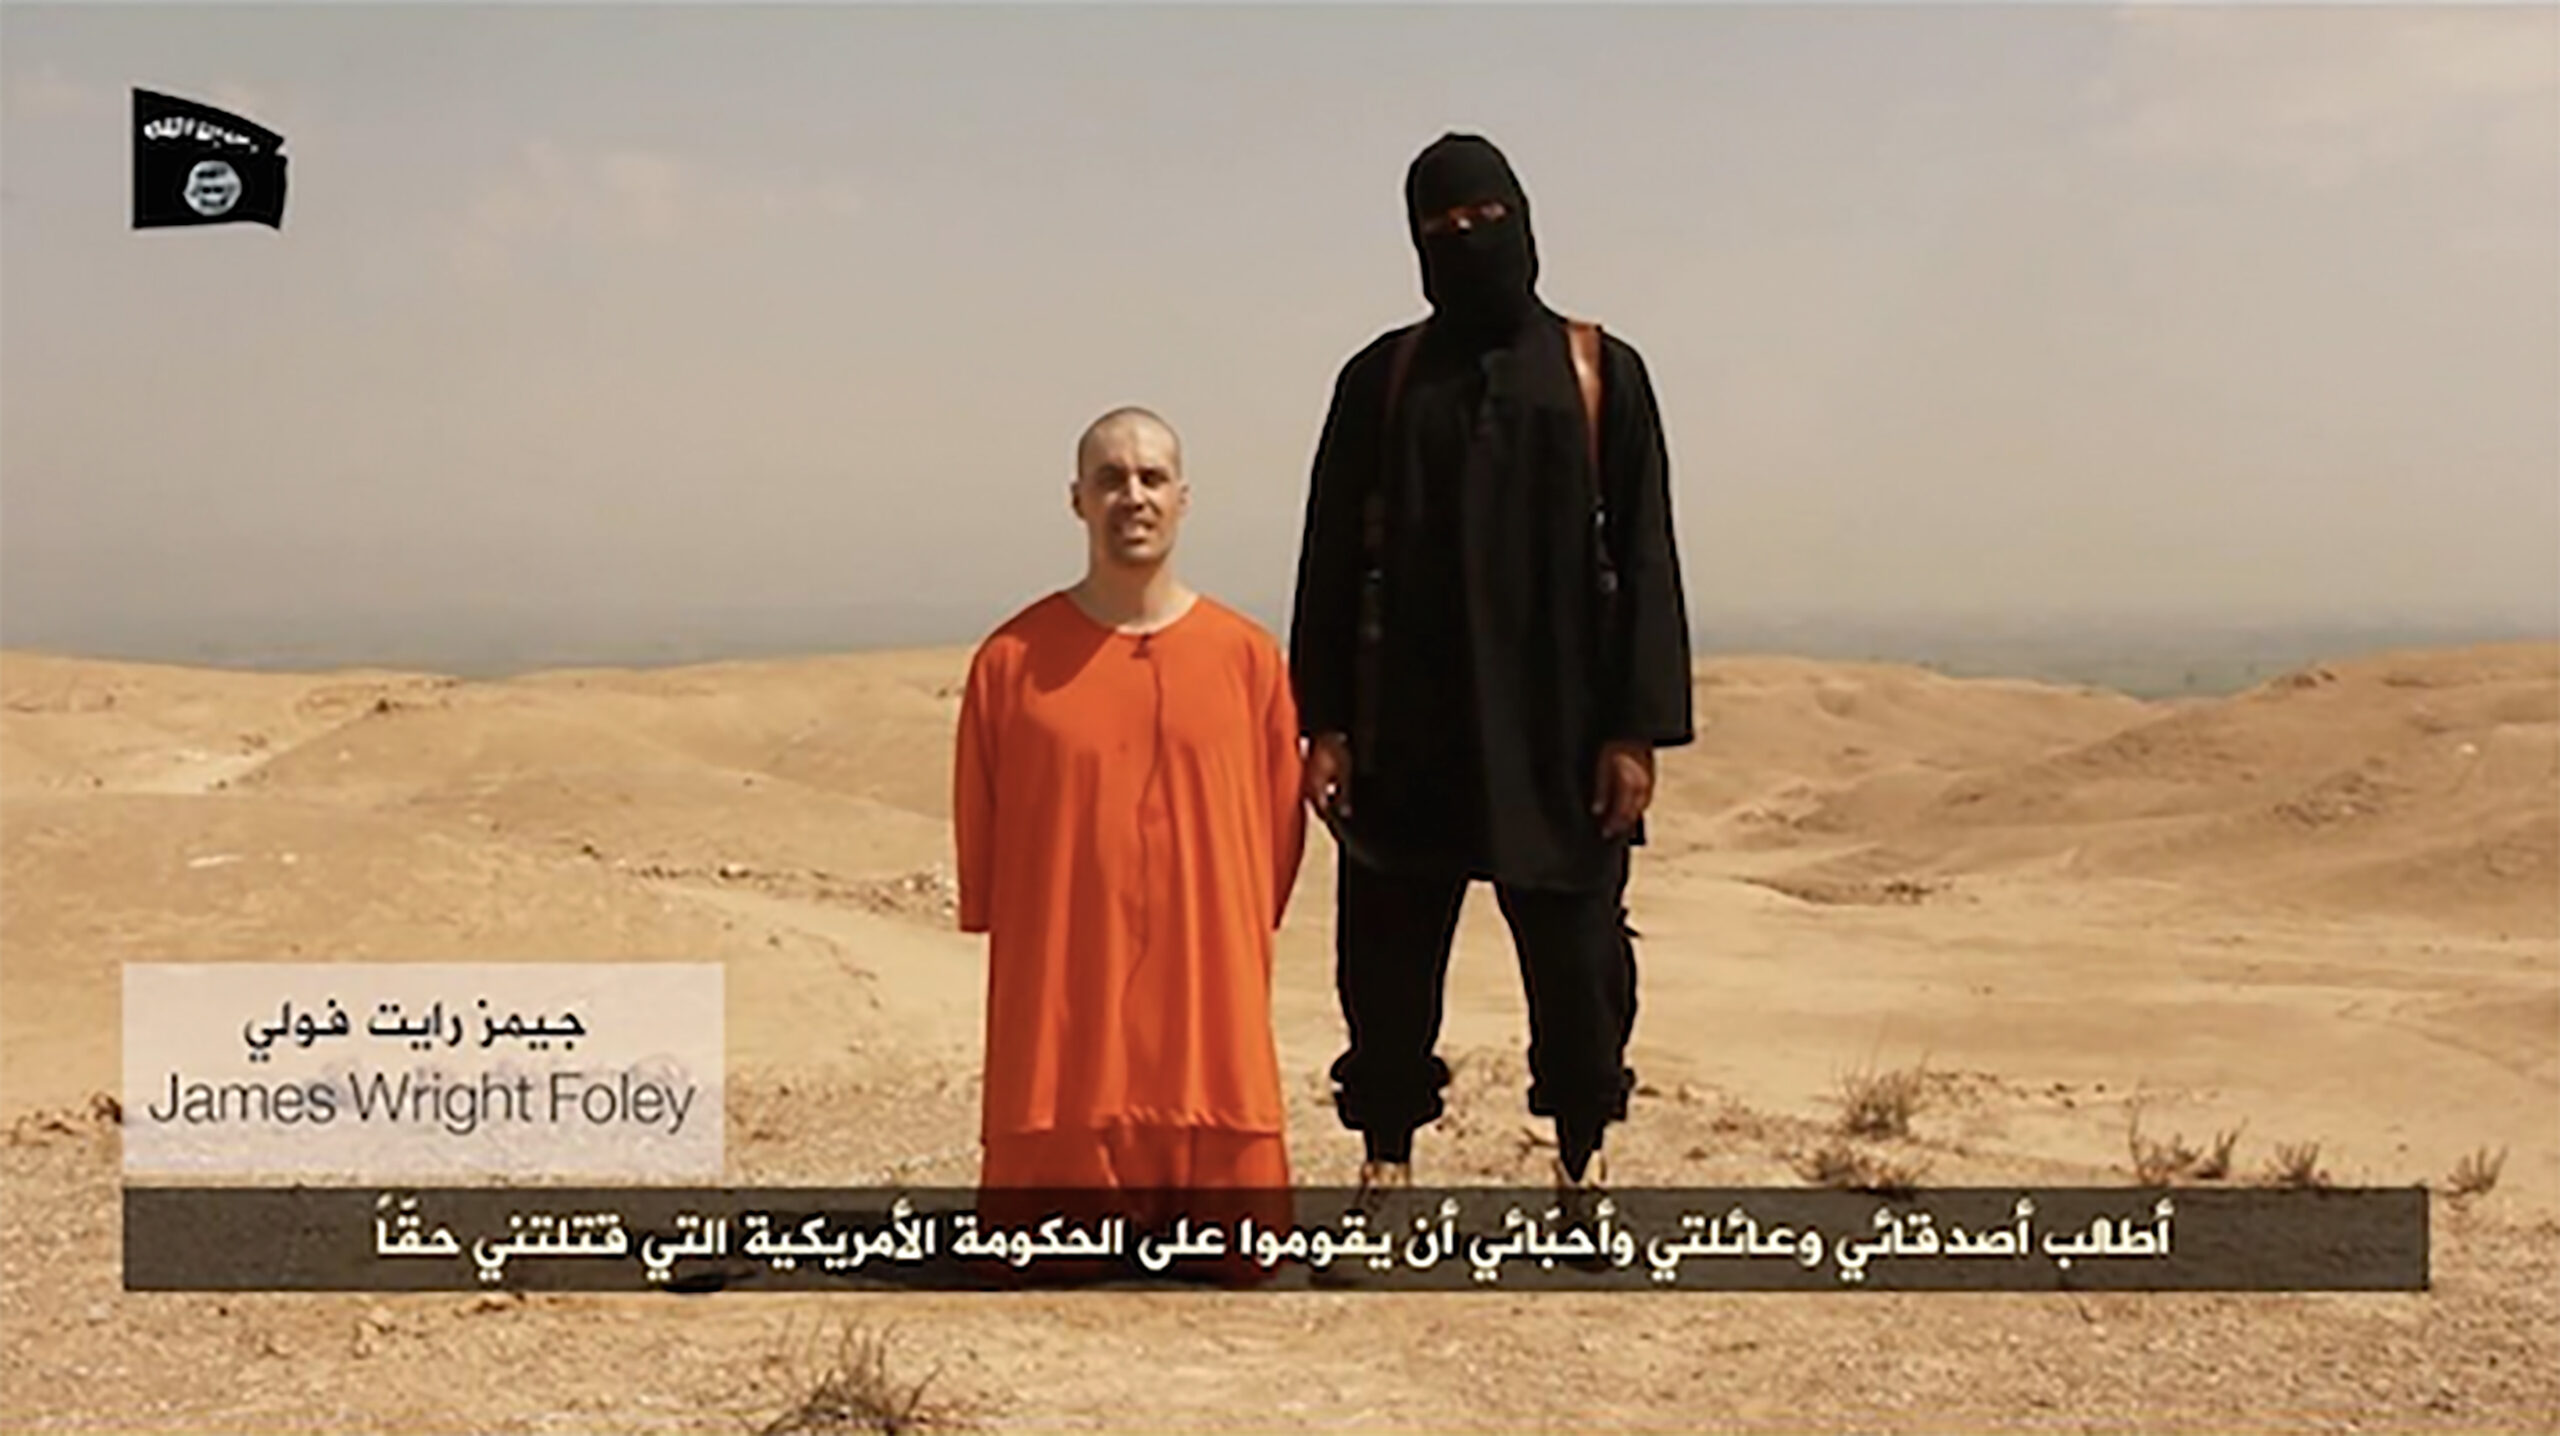 Vídeo de l'autoanomenat Estat Islàmic de la decapitació del periodista James Foley (2014).